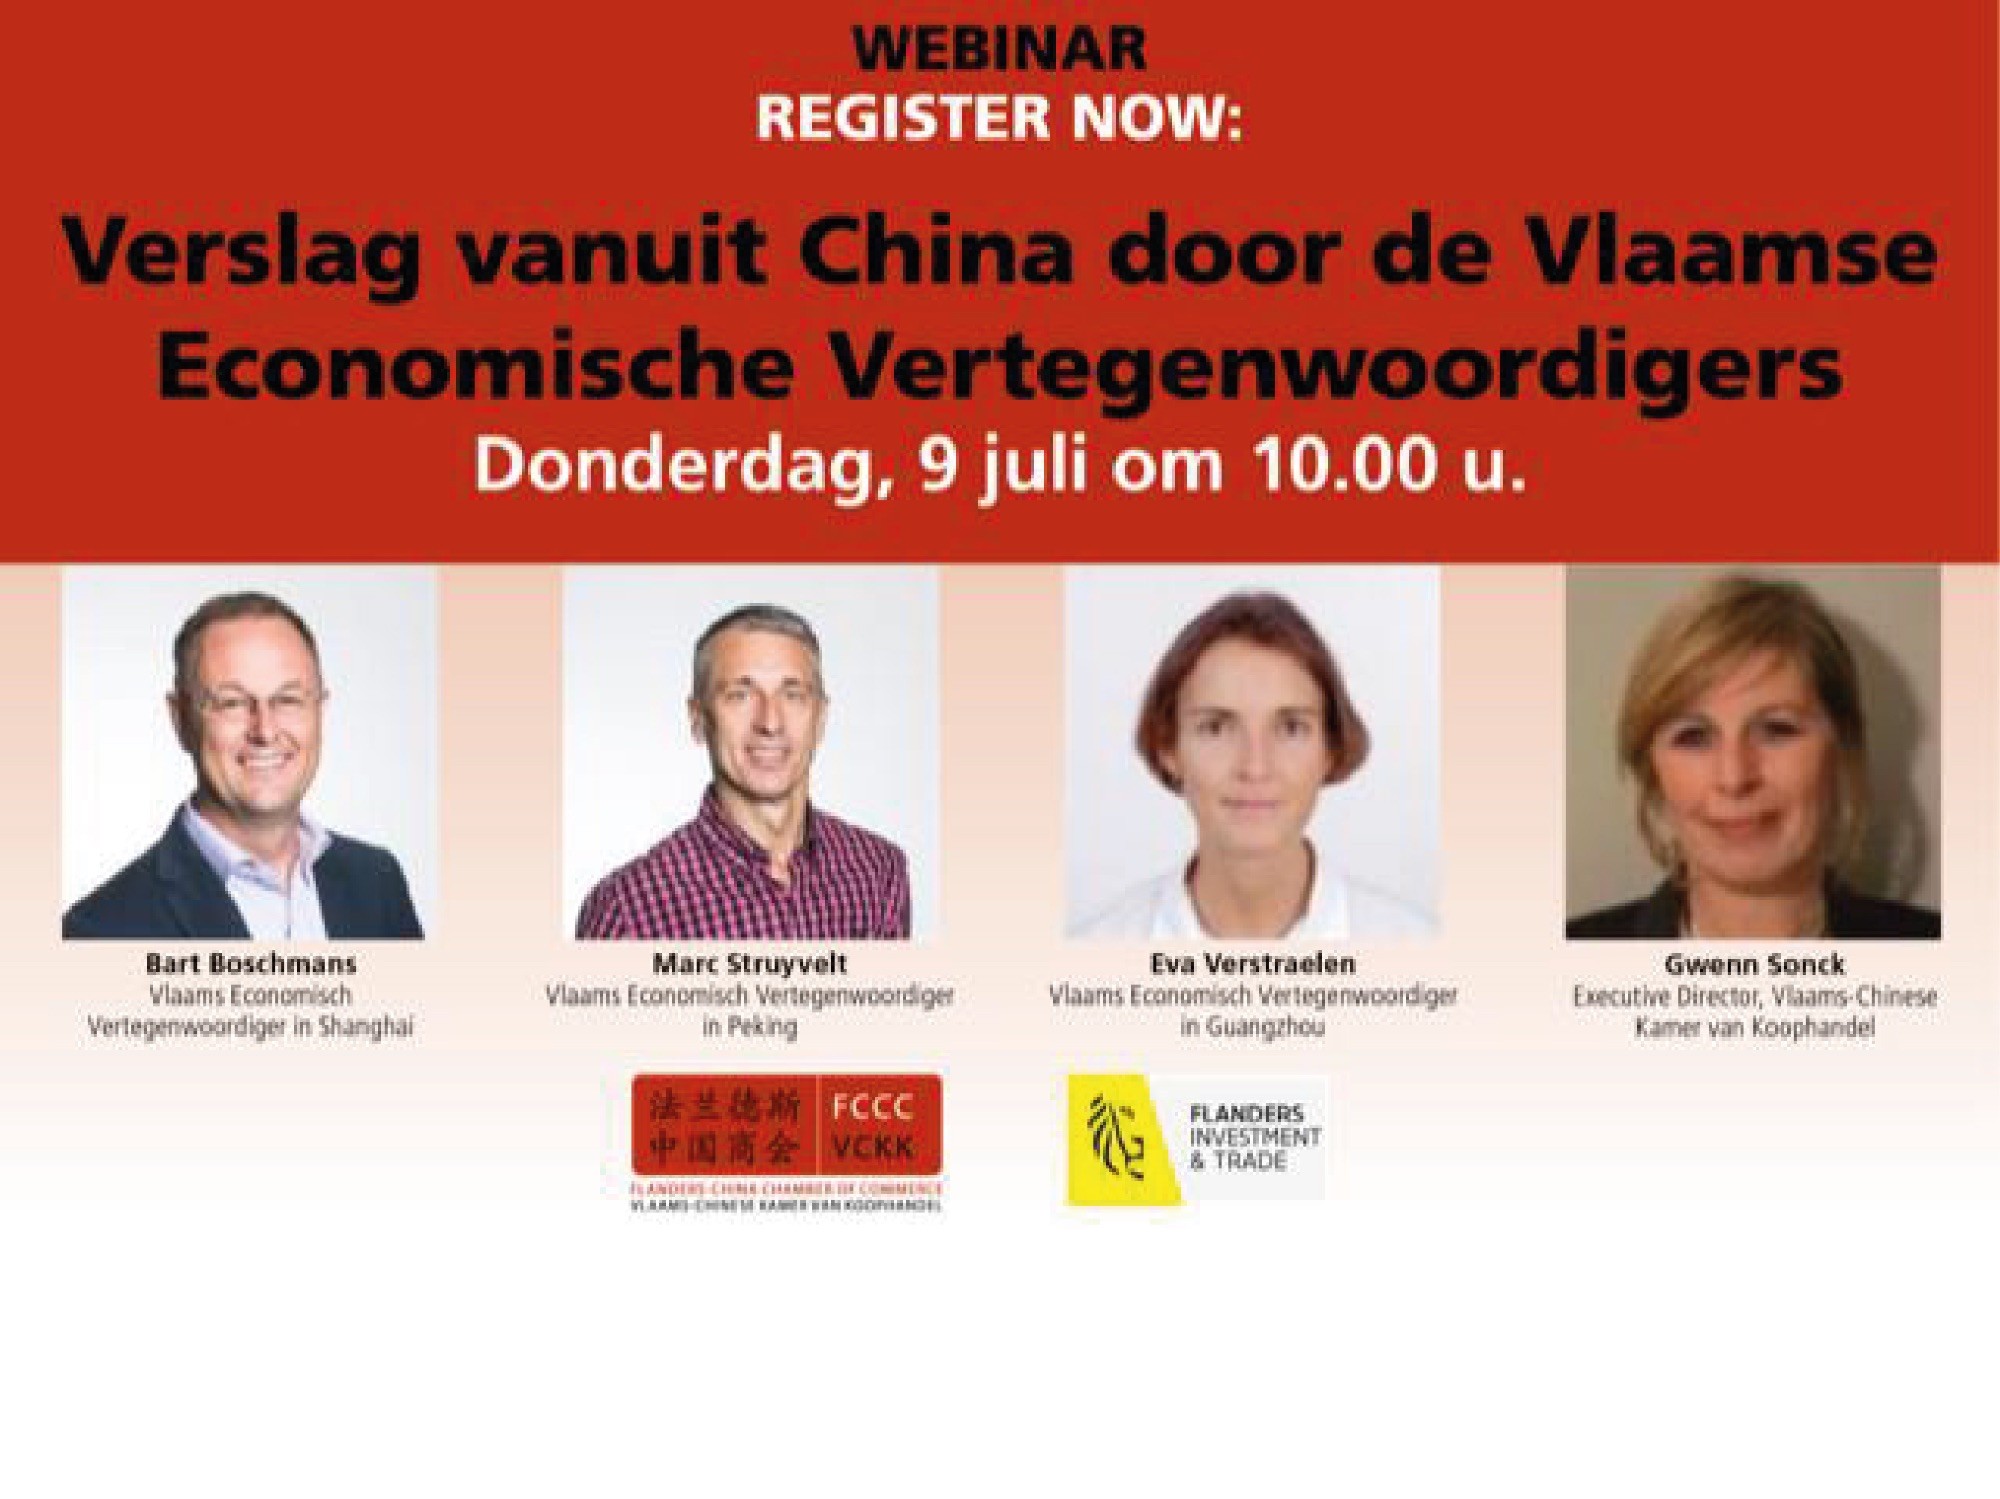 Webinar: Verslag vanuit China door de Vlaamse economische vertegenwoordigers